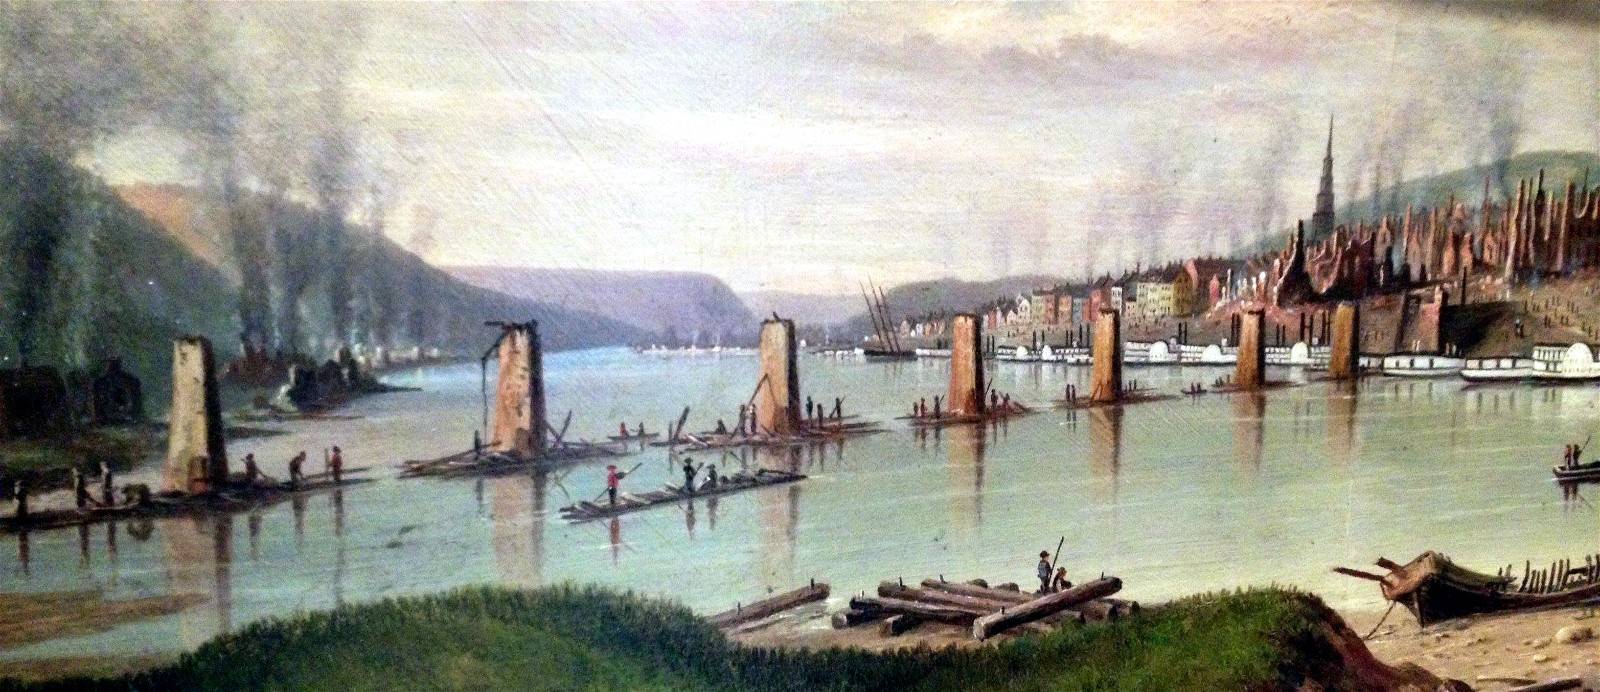 The Monongahela Bridge - 1845.